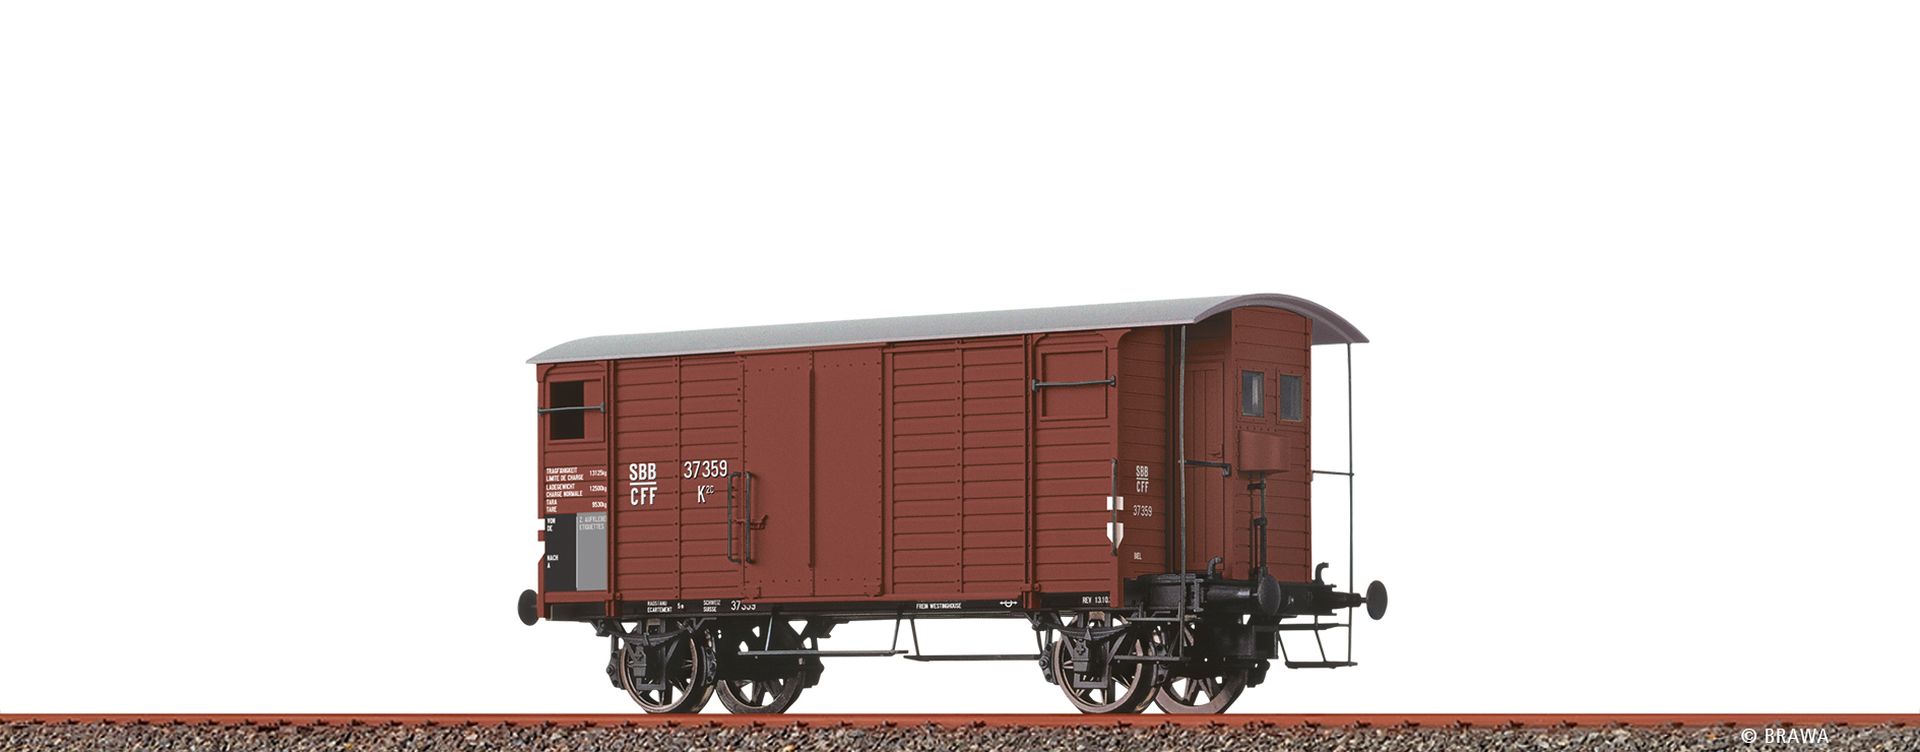 Brawa 47900 - Gedeckter Güterwagen K2, SBB, Ep.II